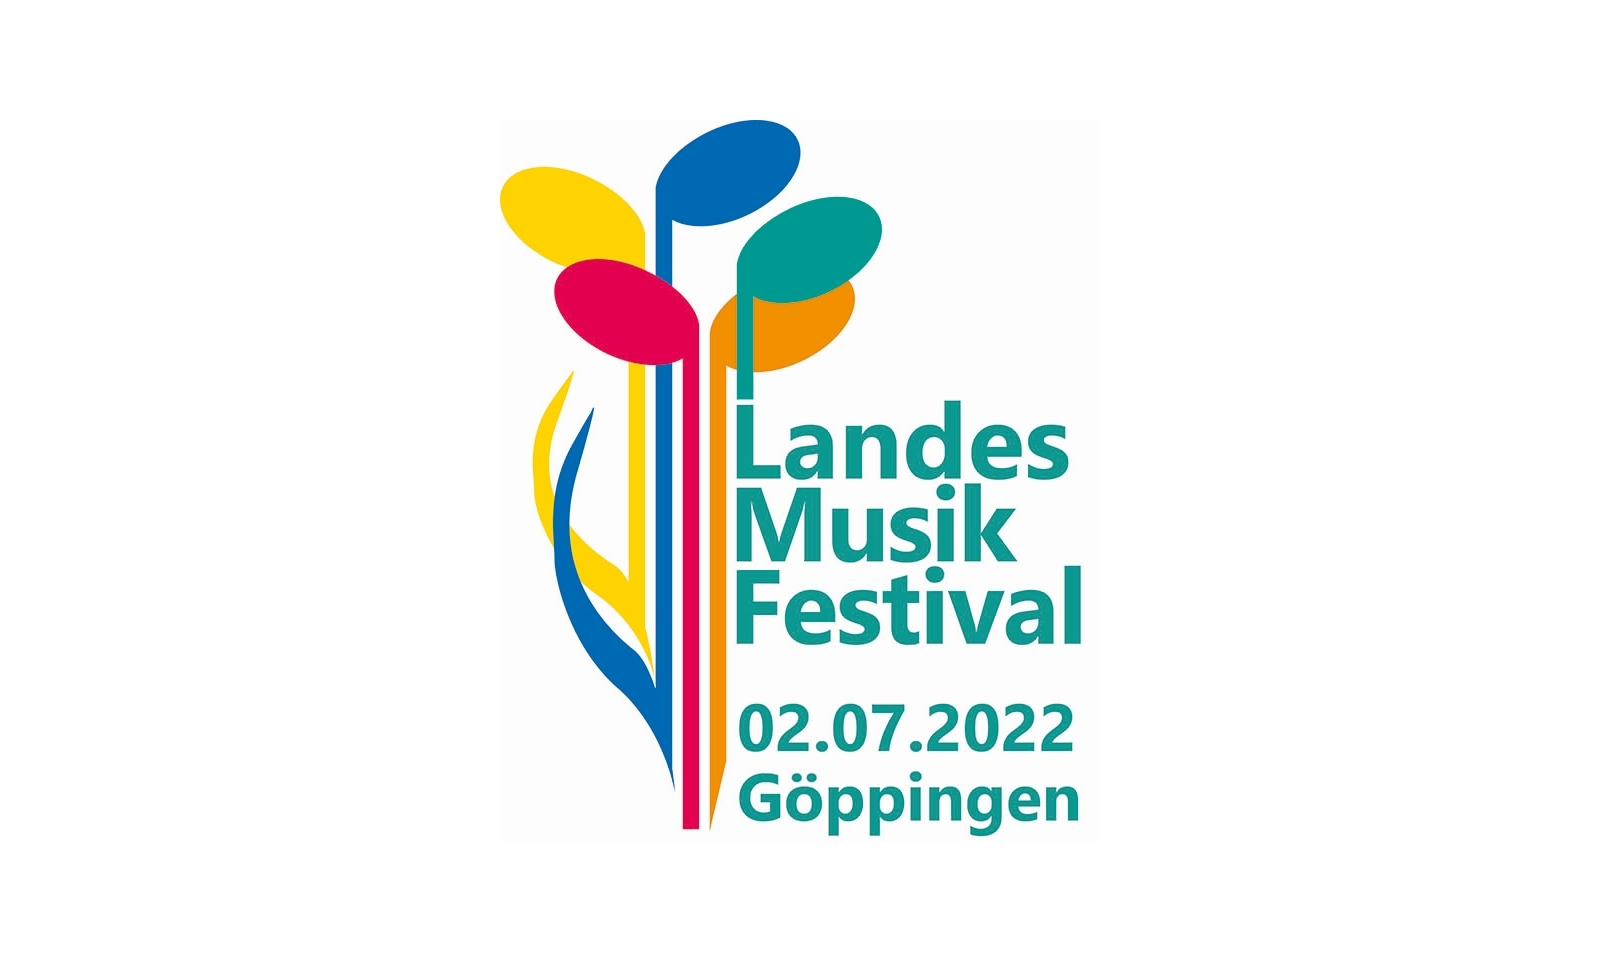 Landes-Musik-Festival 2022 in Göppingen